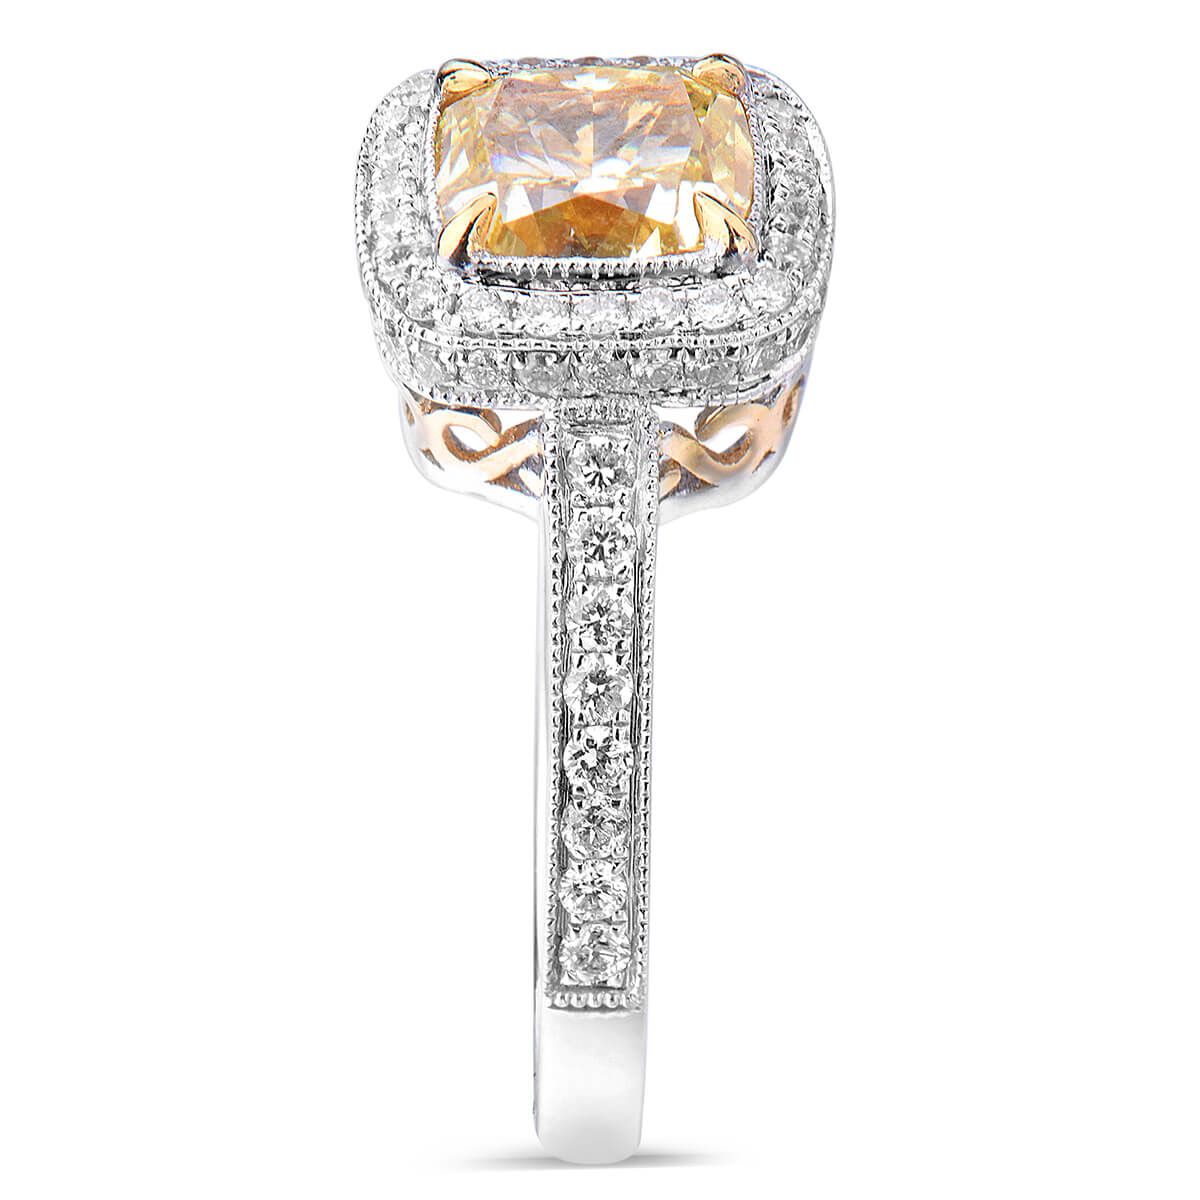 Fancy Intense Yellow Diamond Ring, 1.51 Ct. (1.93 Ct. TW), Cushion shape, GIA Certified, 5171240553